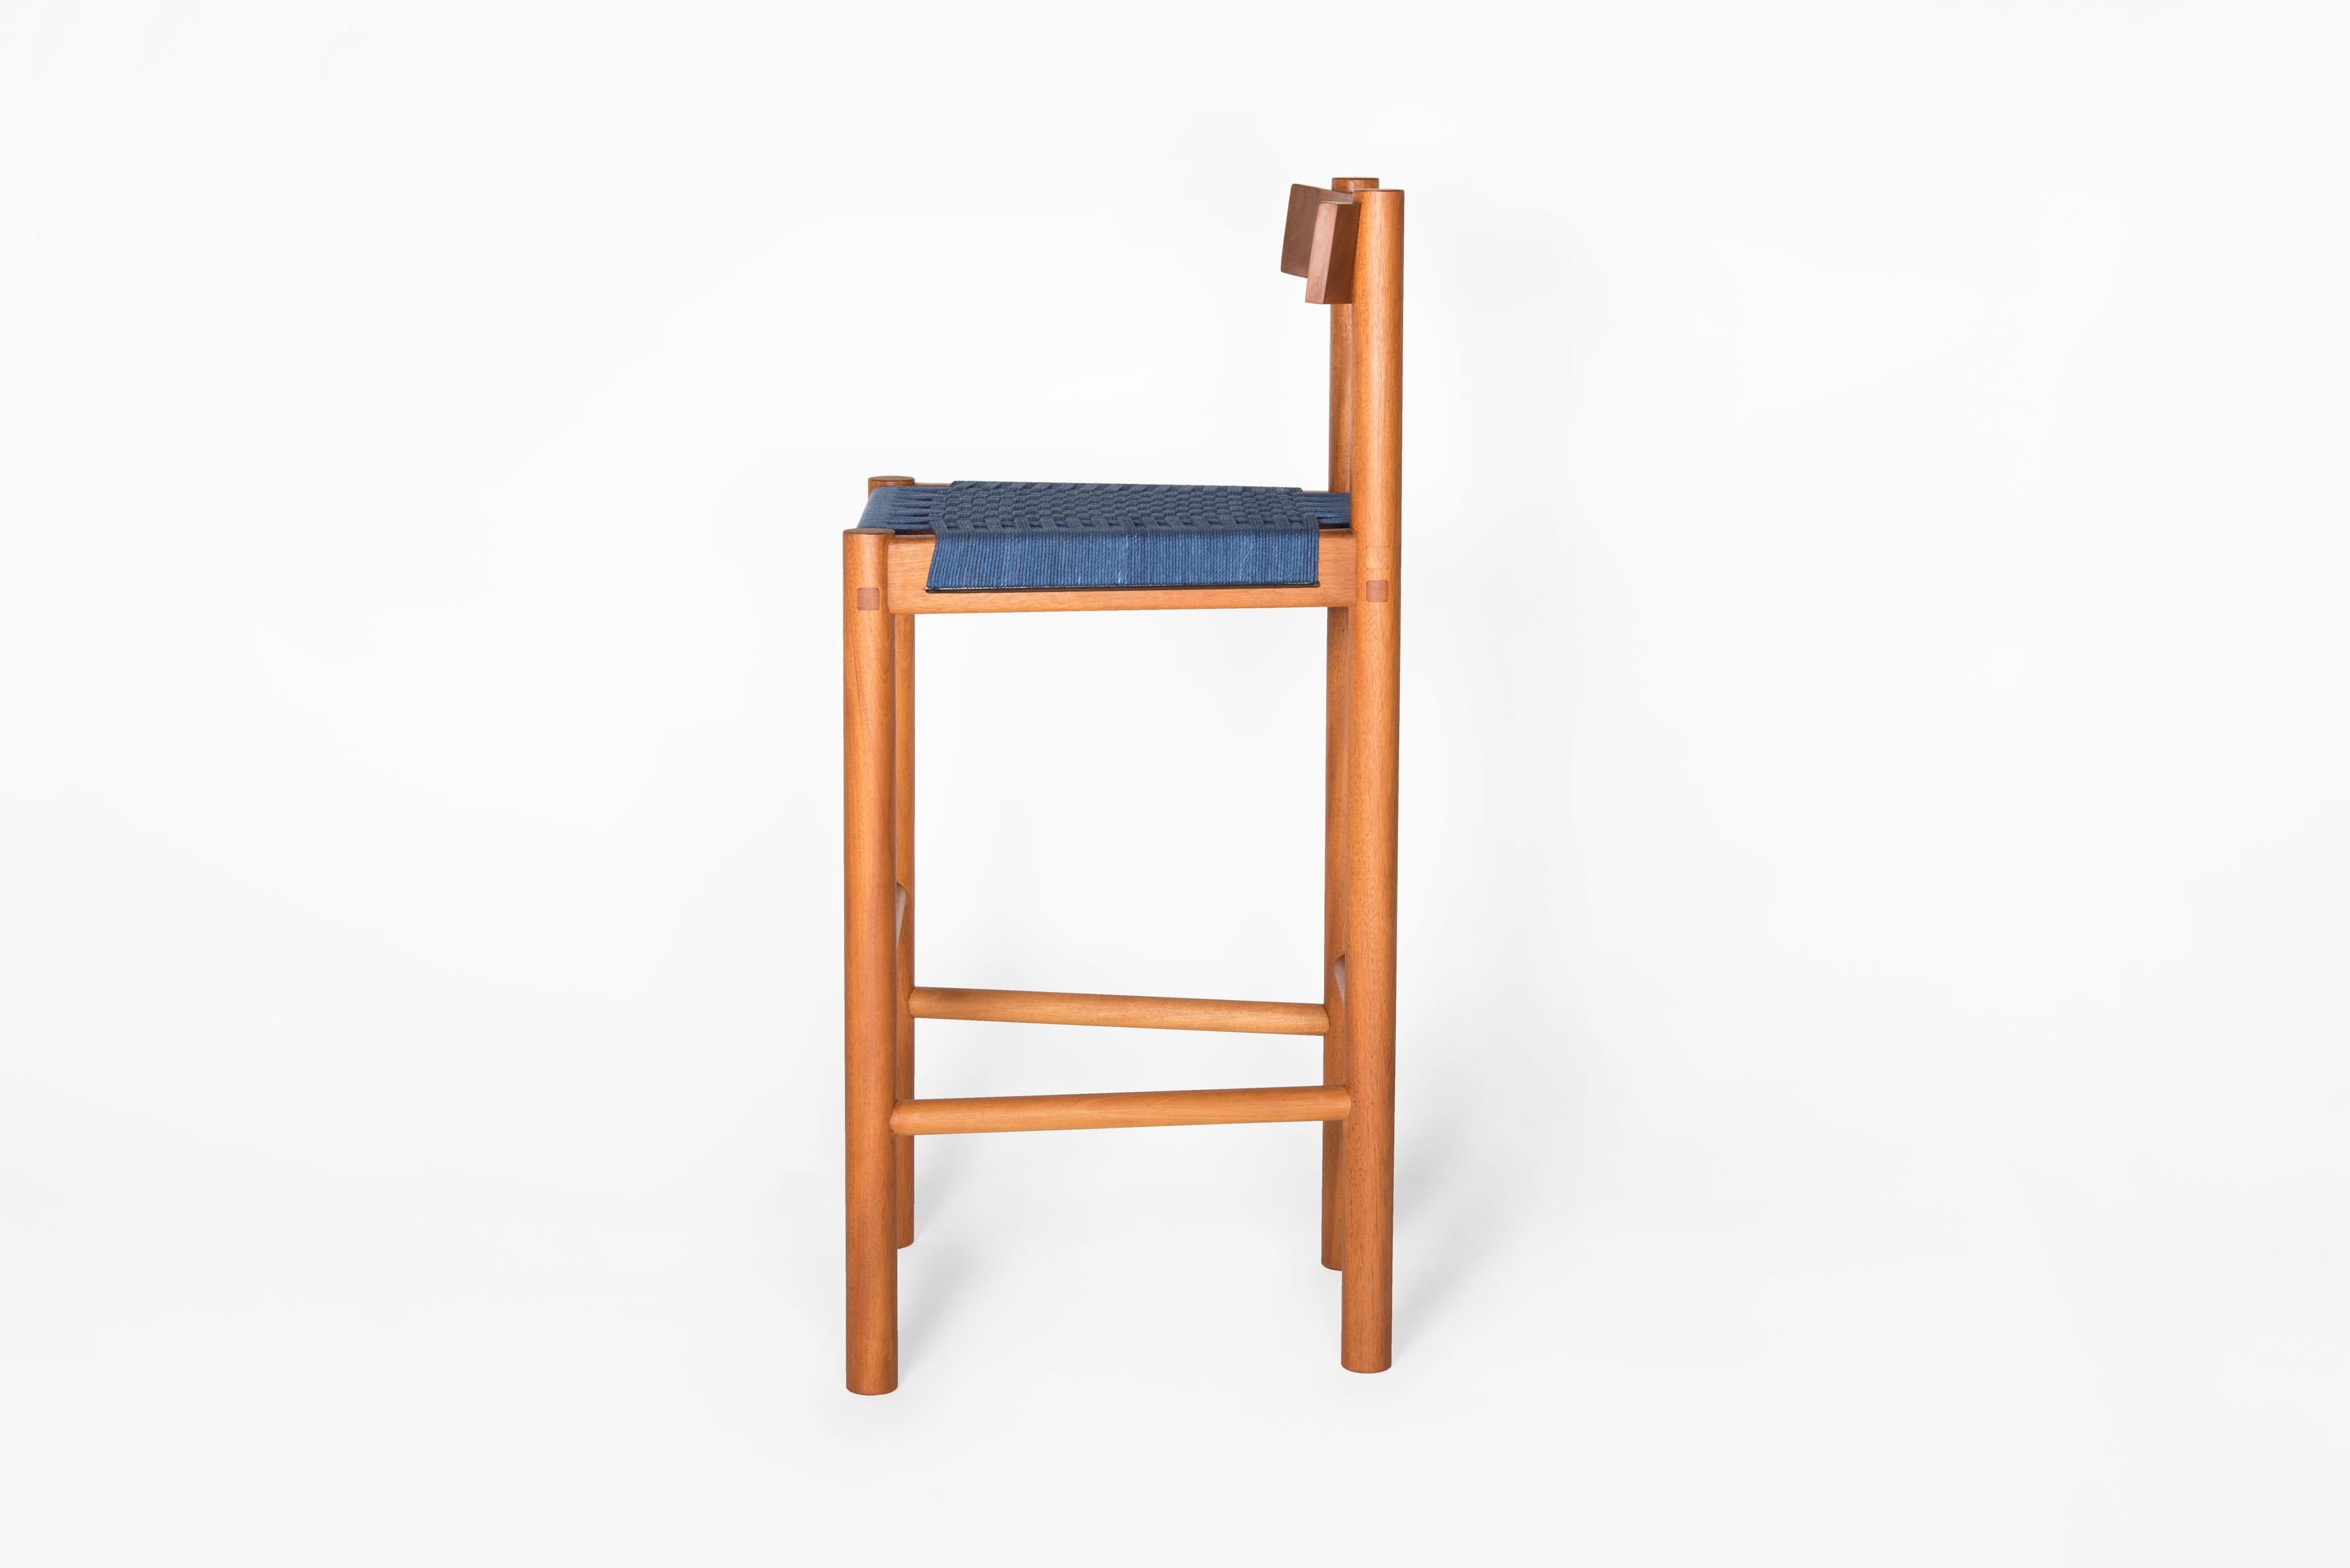 Ein Hocker zur Ergänzung der Familie Sáasil. Genau wie beim Sáasil Chair bildet seine leichte, aber solide Struktur den Rahmen für den handgeflochtenen Sitz aus Baumwolle oder Nylonfäden. Die Art und Weise, wie das Stück hergestellt wird, vereint